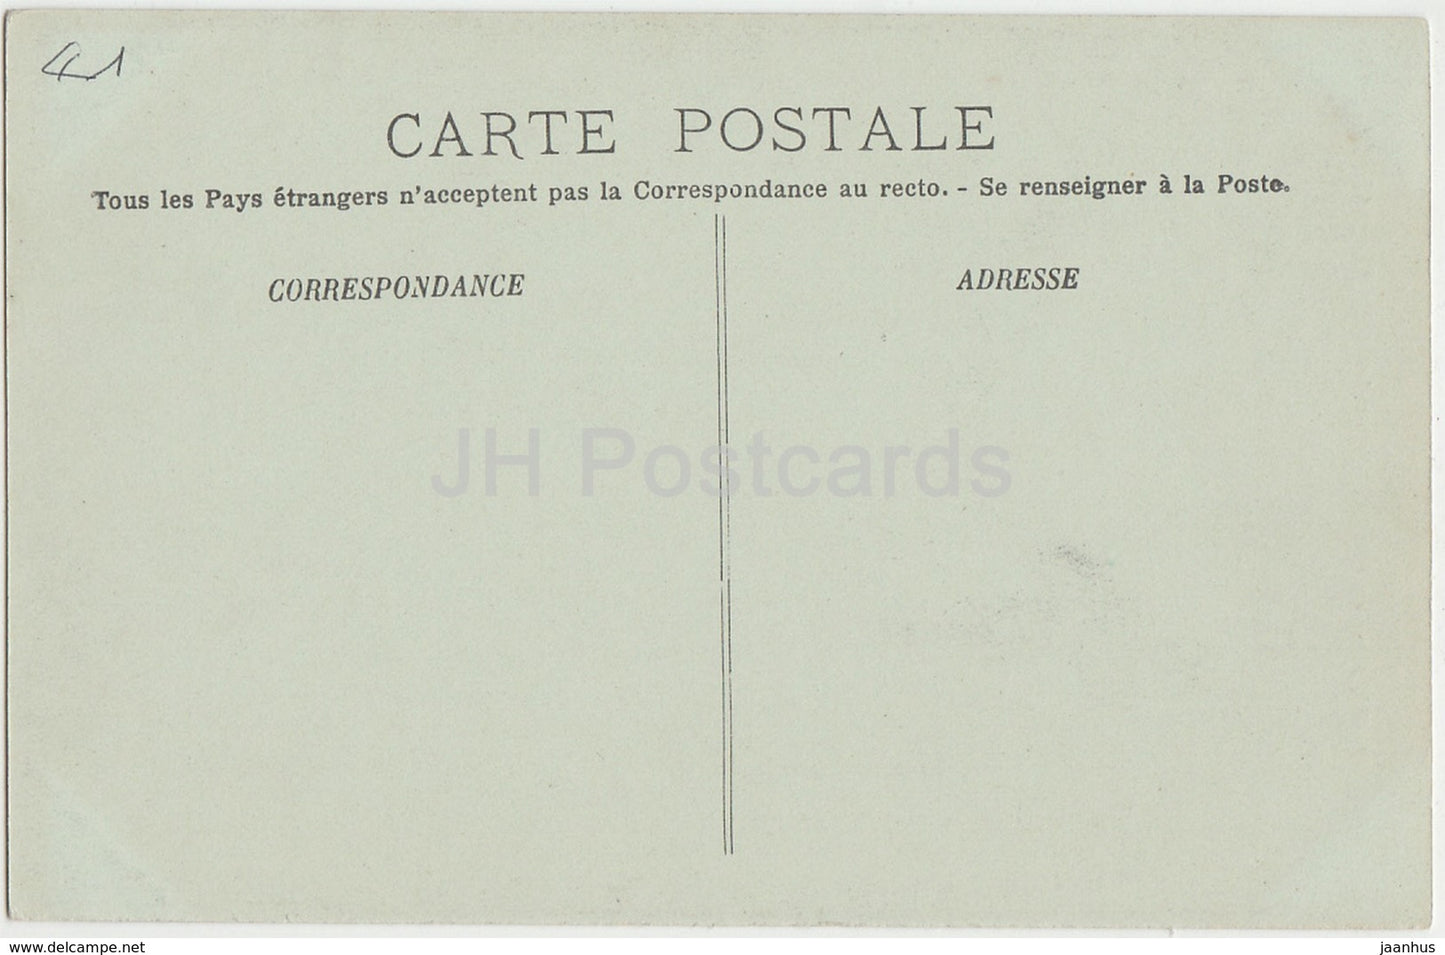 Blois - La Chateau - Aile Francois Ier - Cheminee de la Bibliotheque de Medicis - 86 - old postcard - France - unused